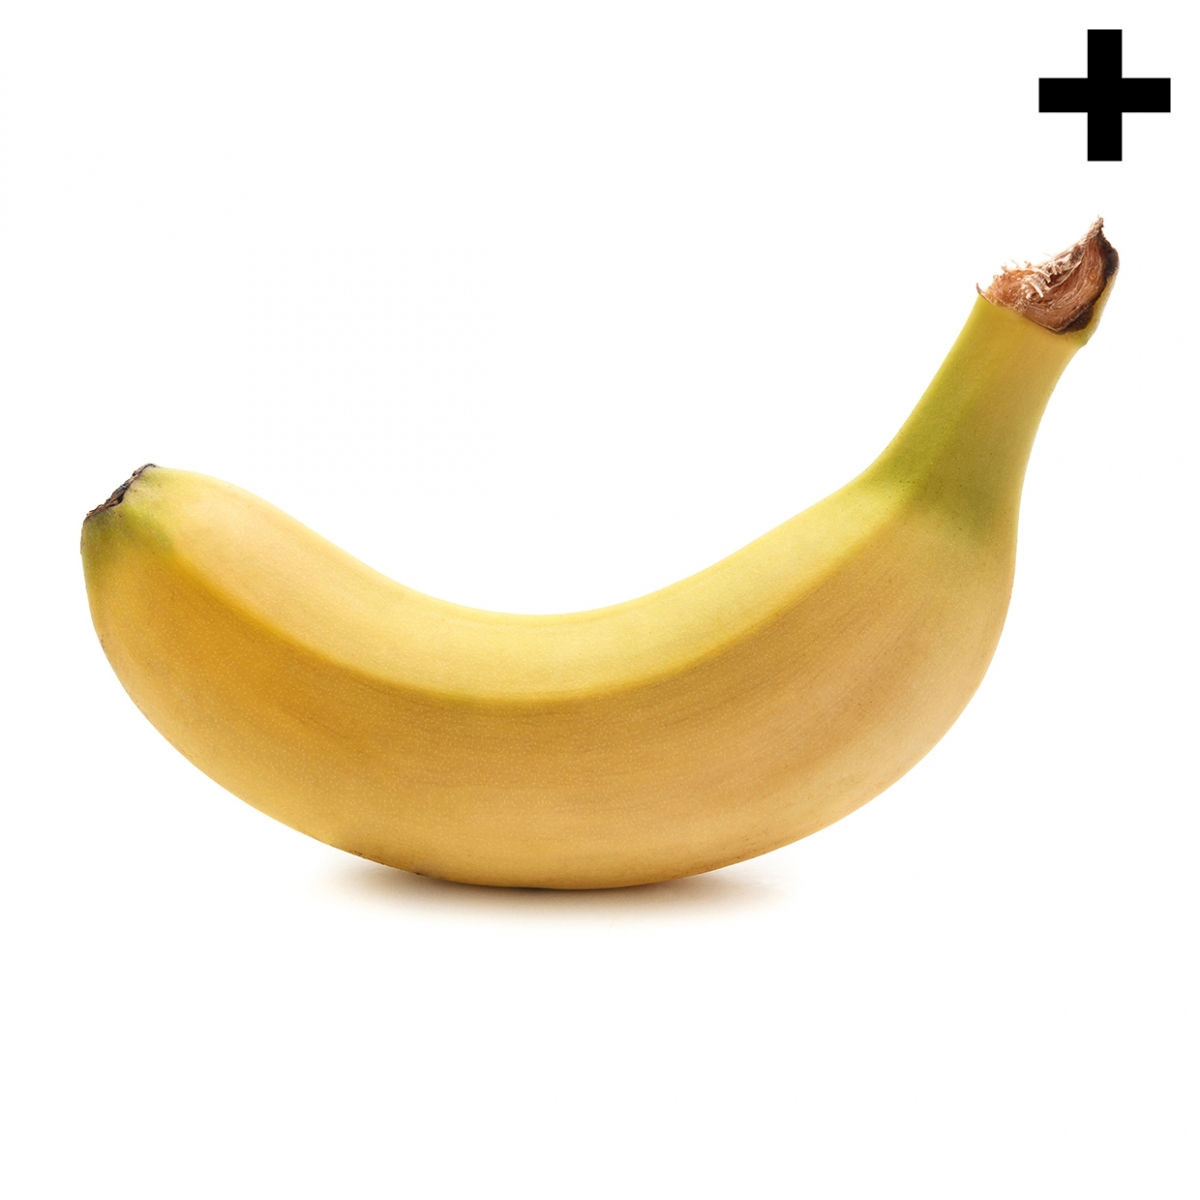 Imagen en la que se ve un plátano de perfil